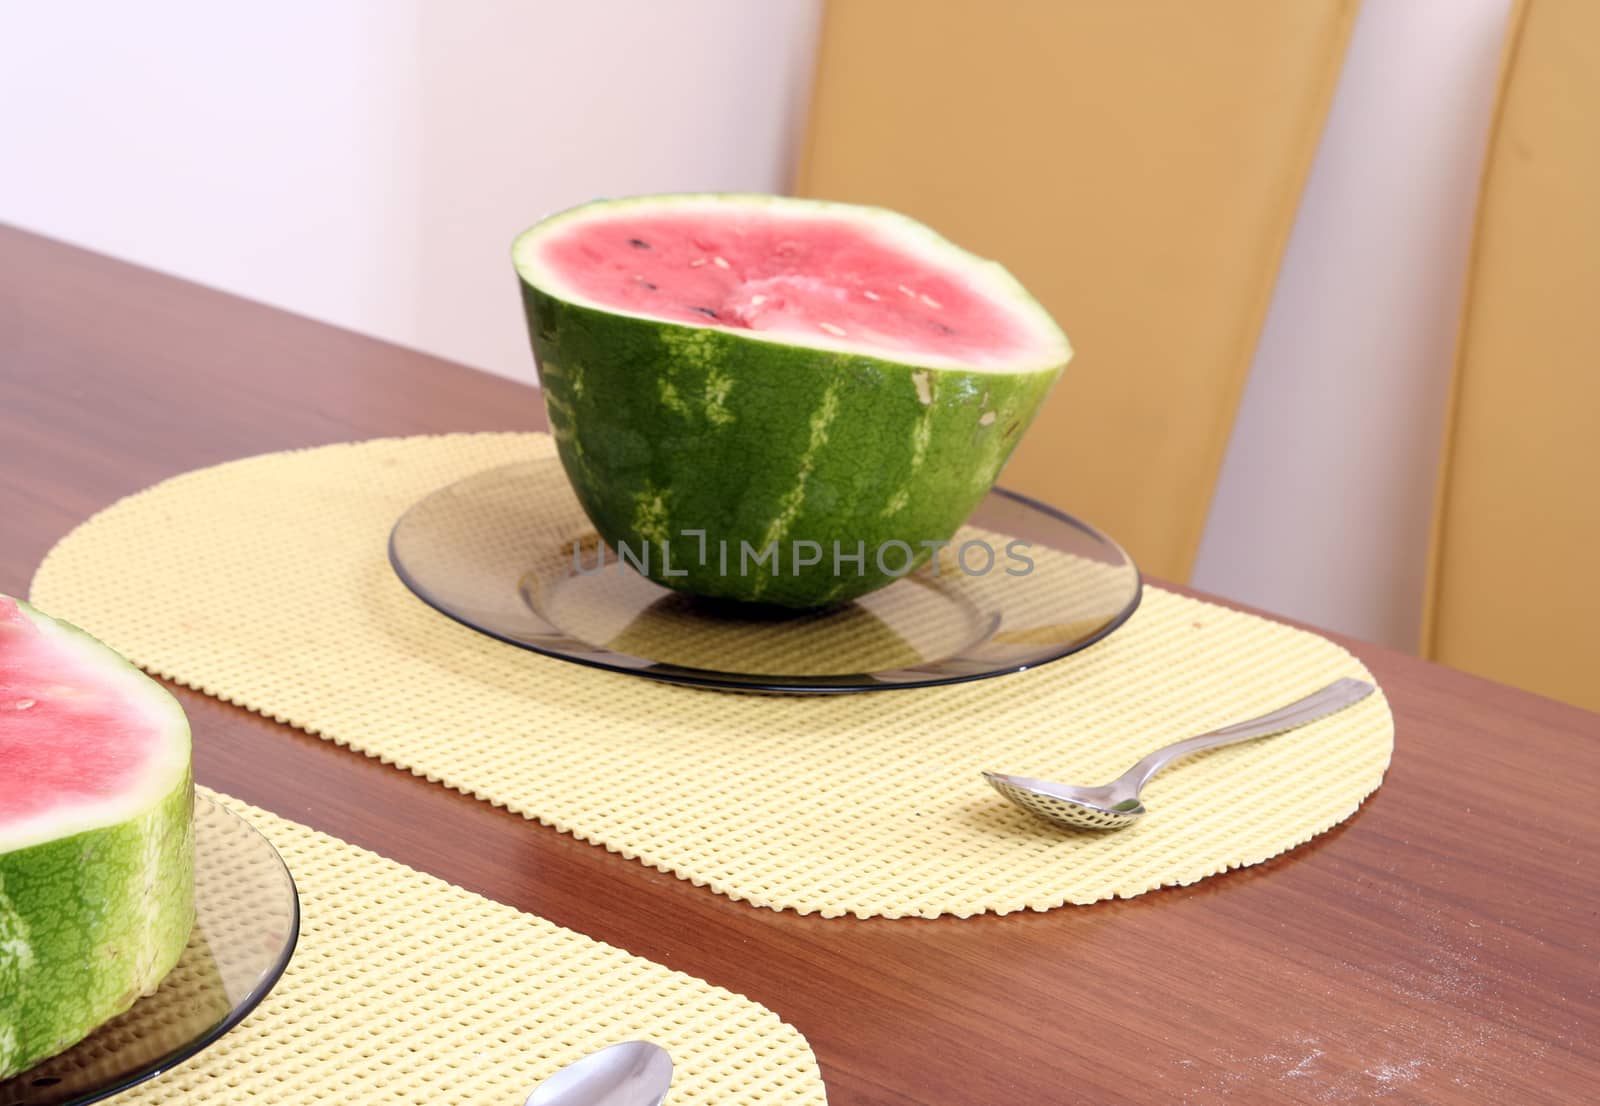 Watermelon by arosoft